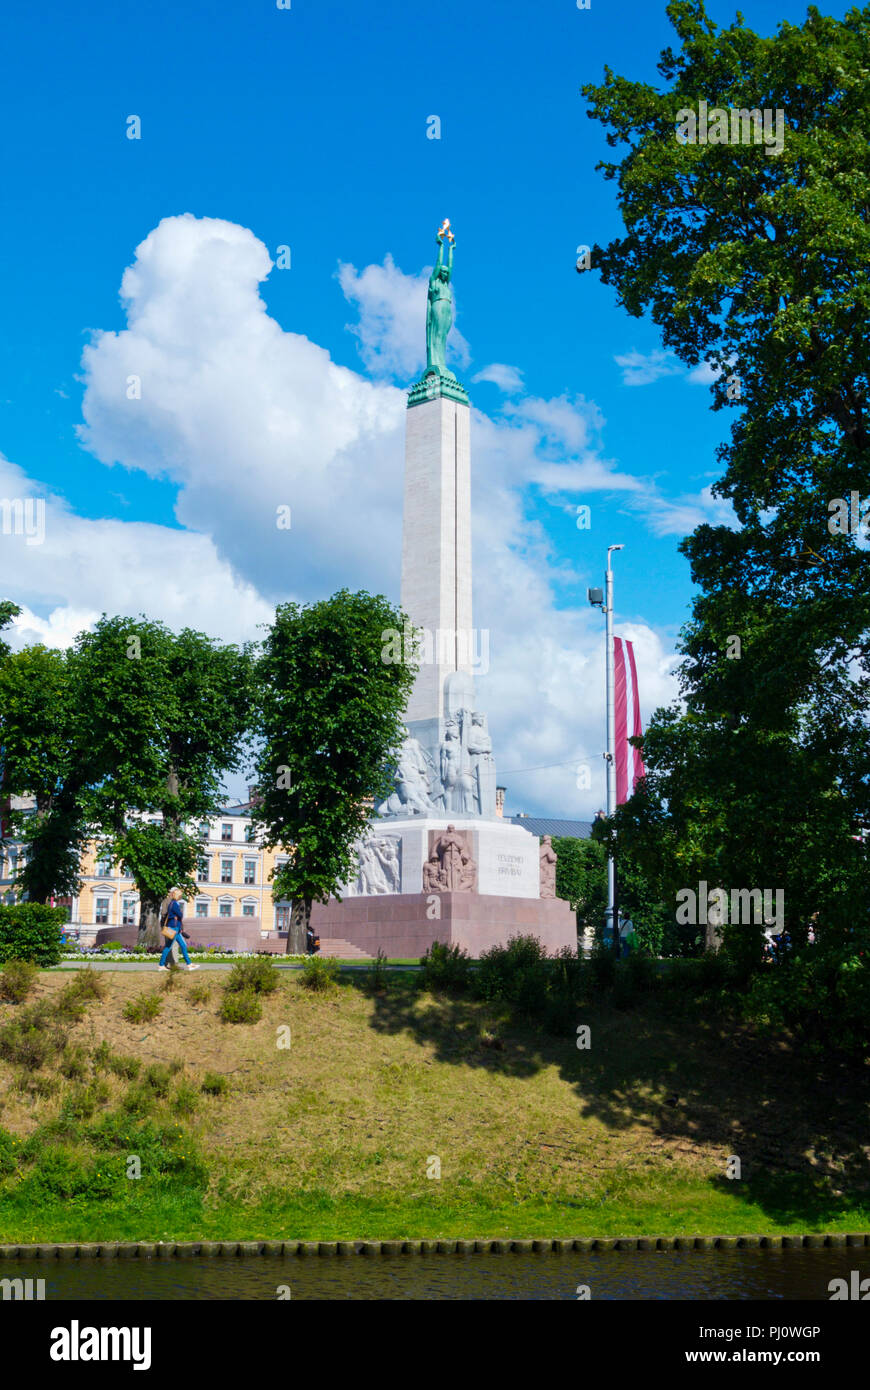 Brivibas piemineklis, Freedom Monument, Brivibas pieminekla laukums, Riga, Latvia Stock Photo